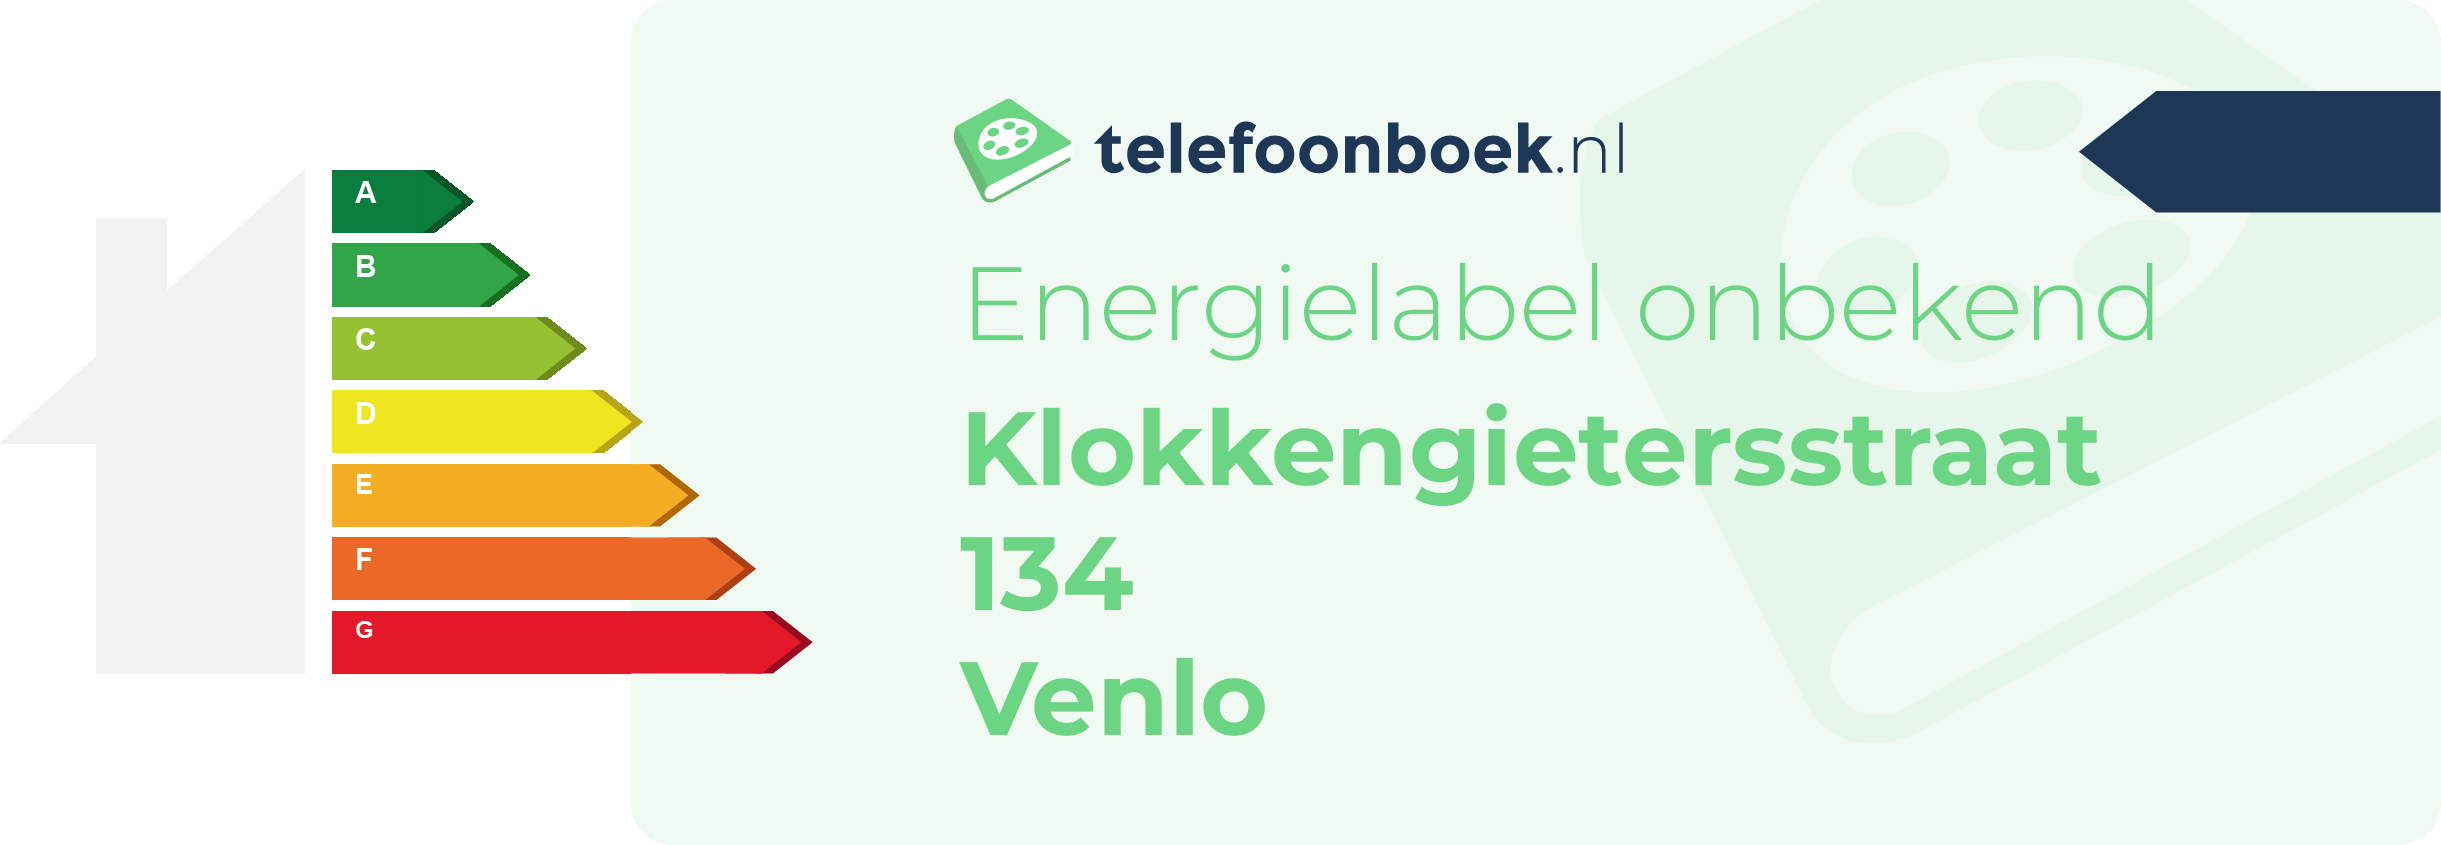 Energielabel Klokkengietersstraat 134 Venlo